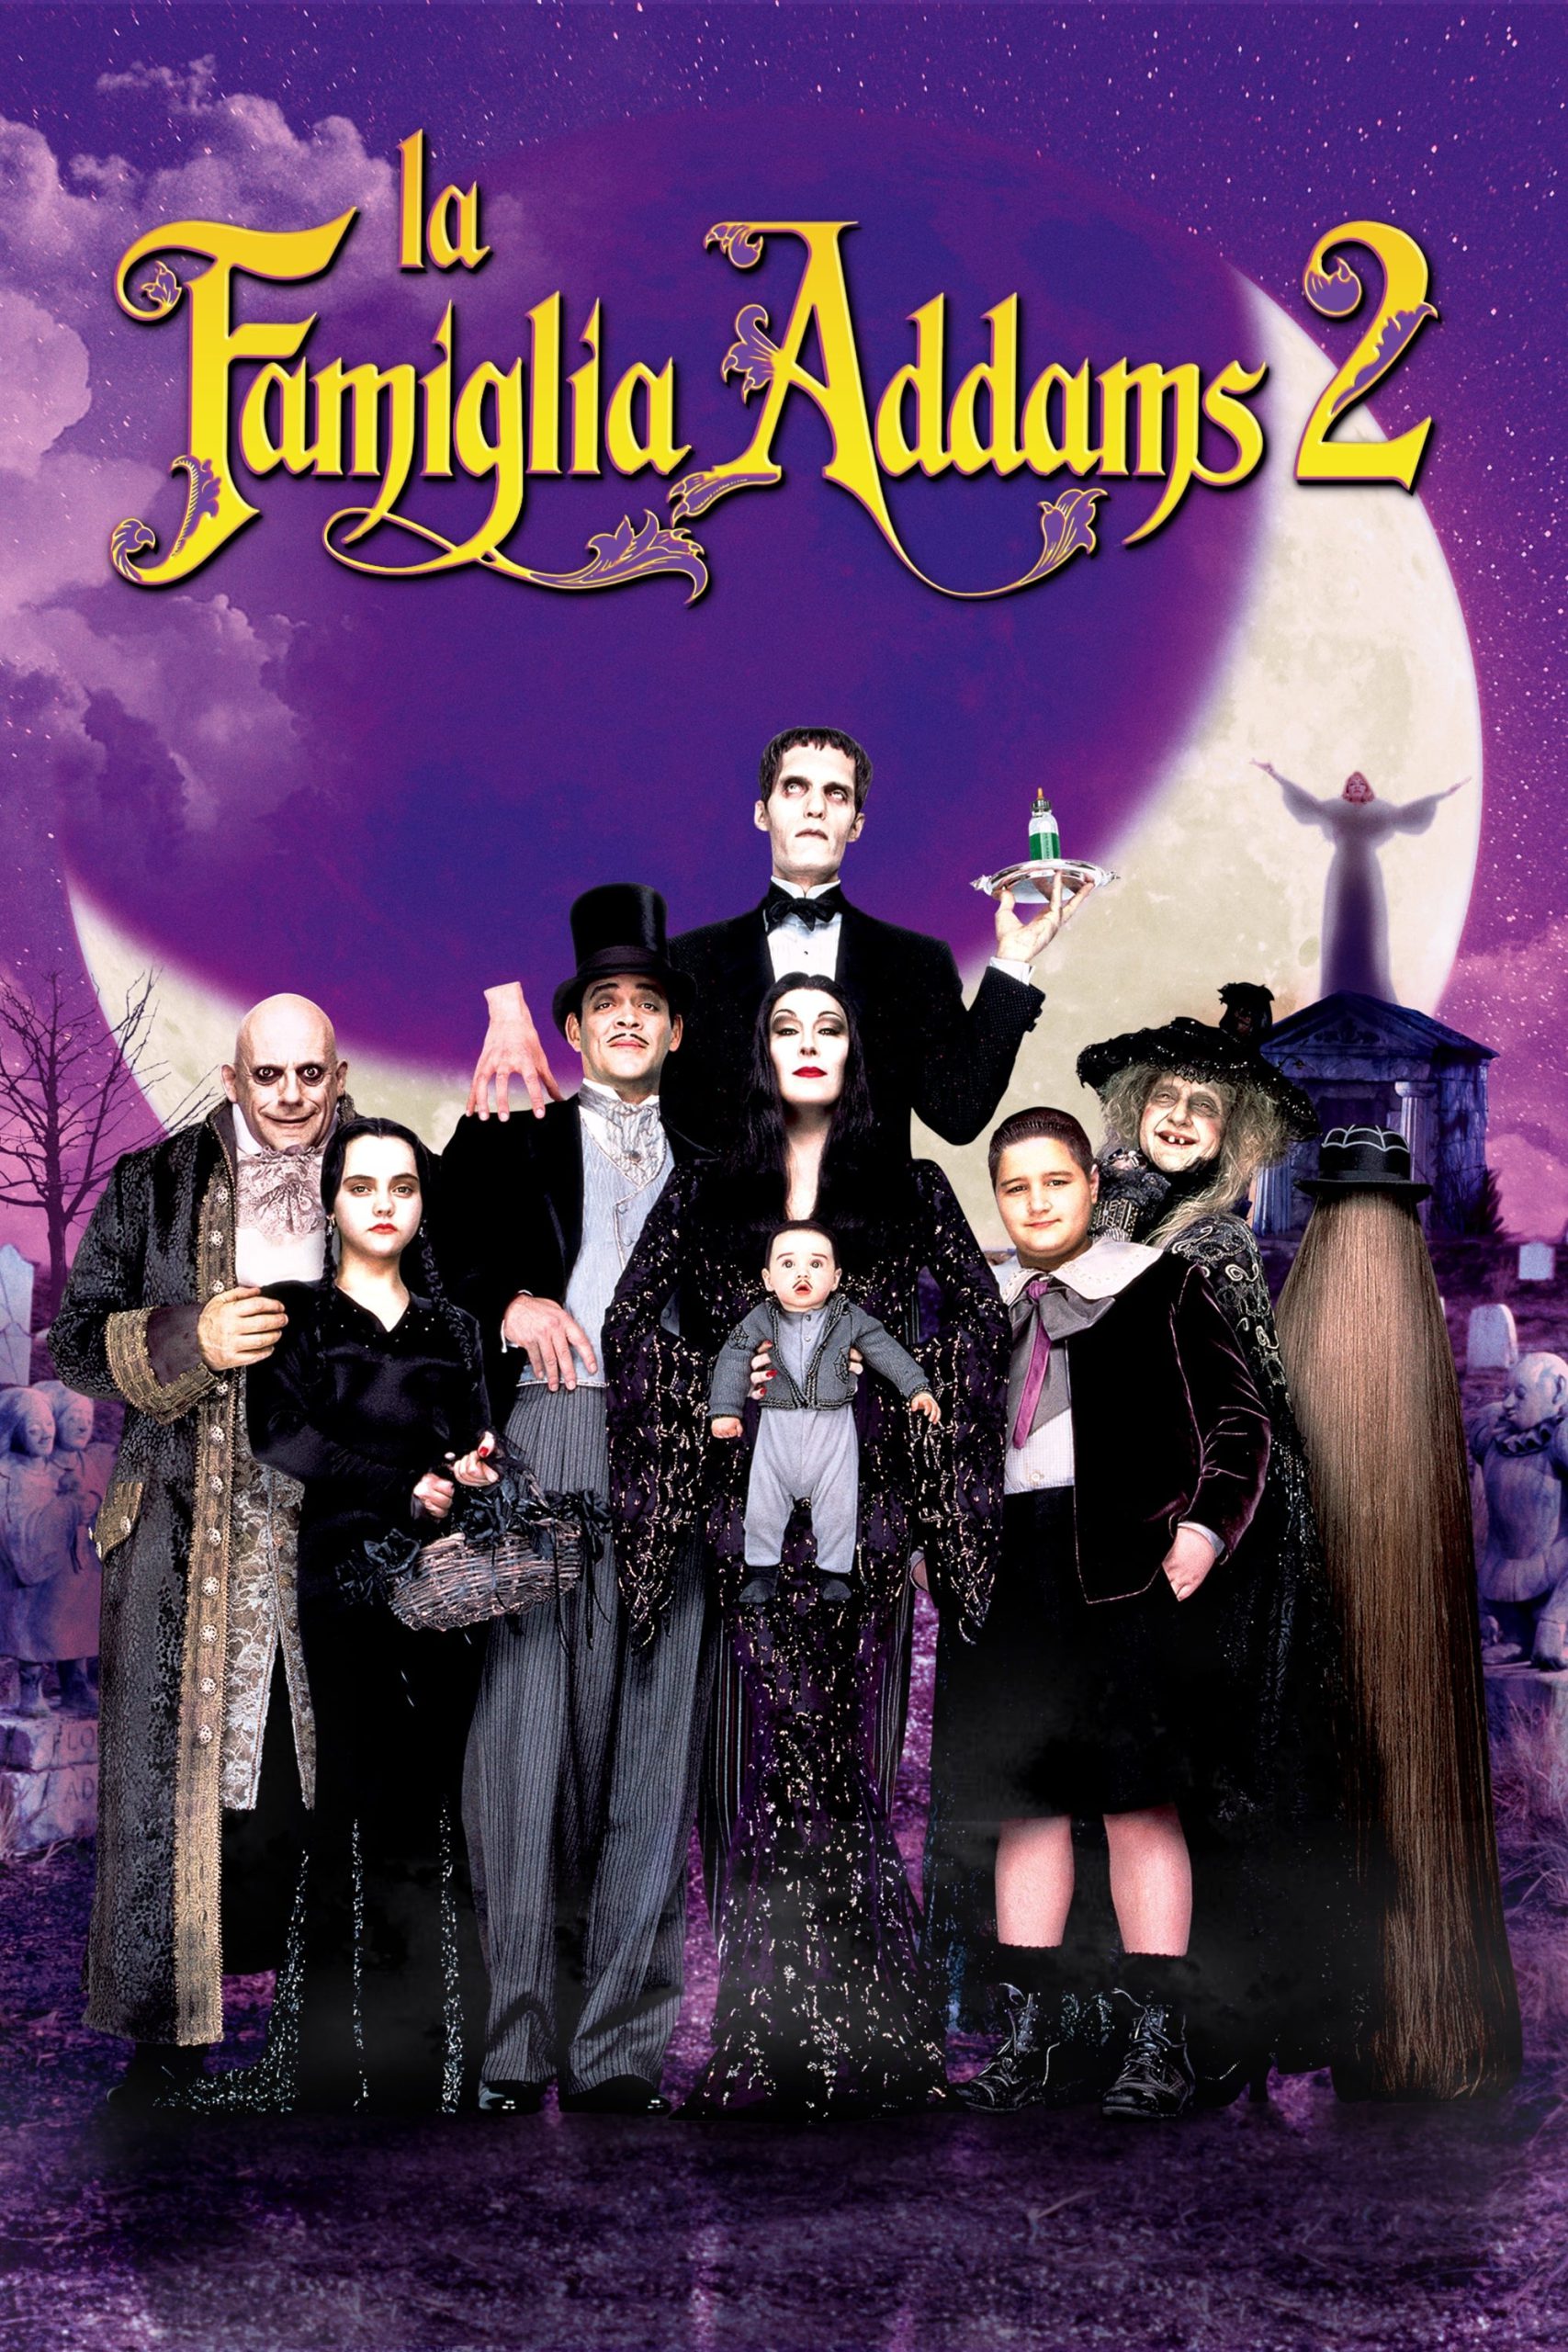 La famiglia Addams 2 [HD] (1993)